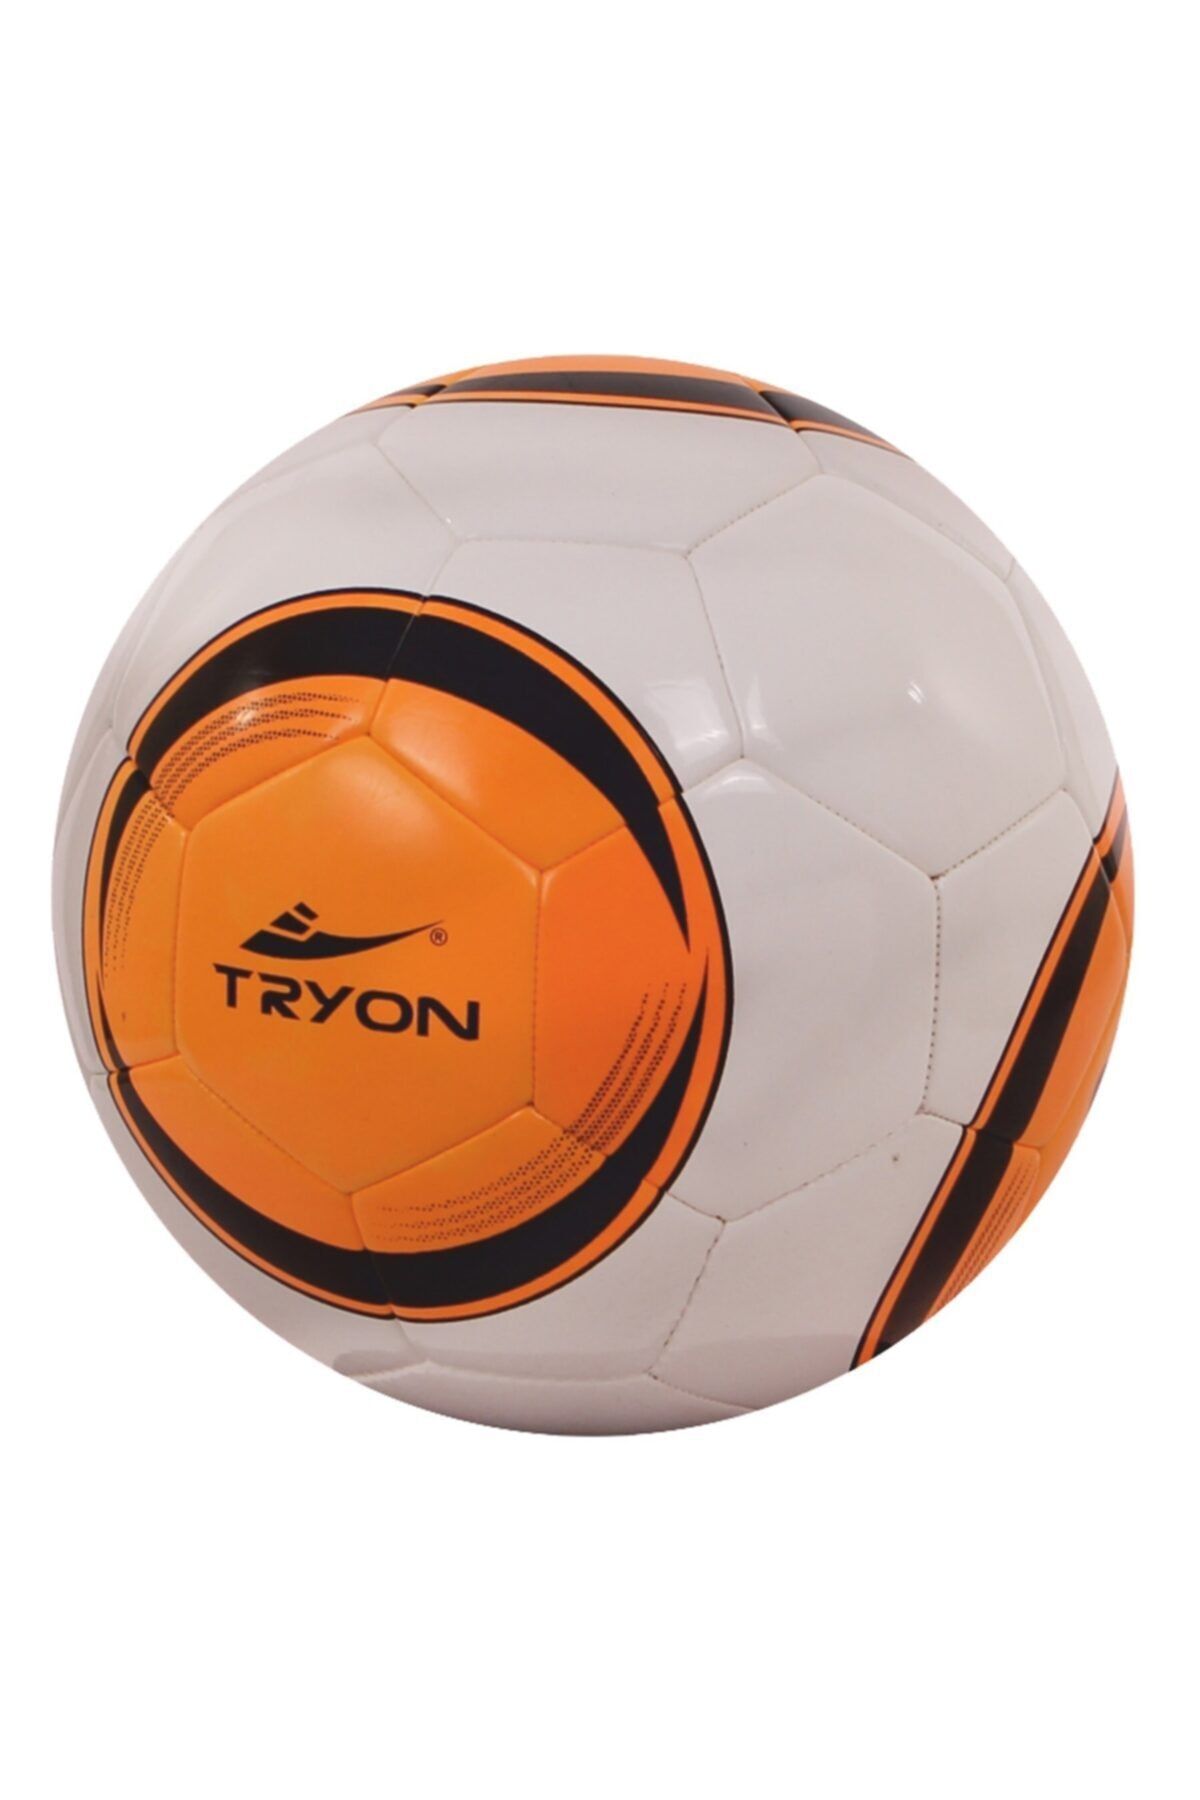 TRYON Futbol Topu Hybrıd-t5